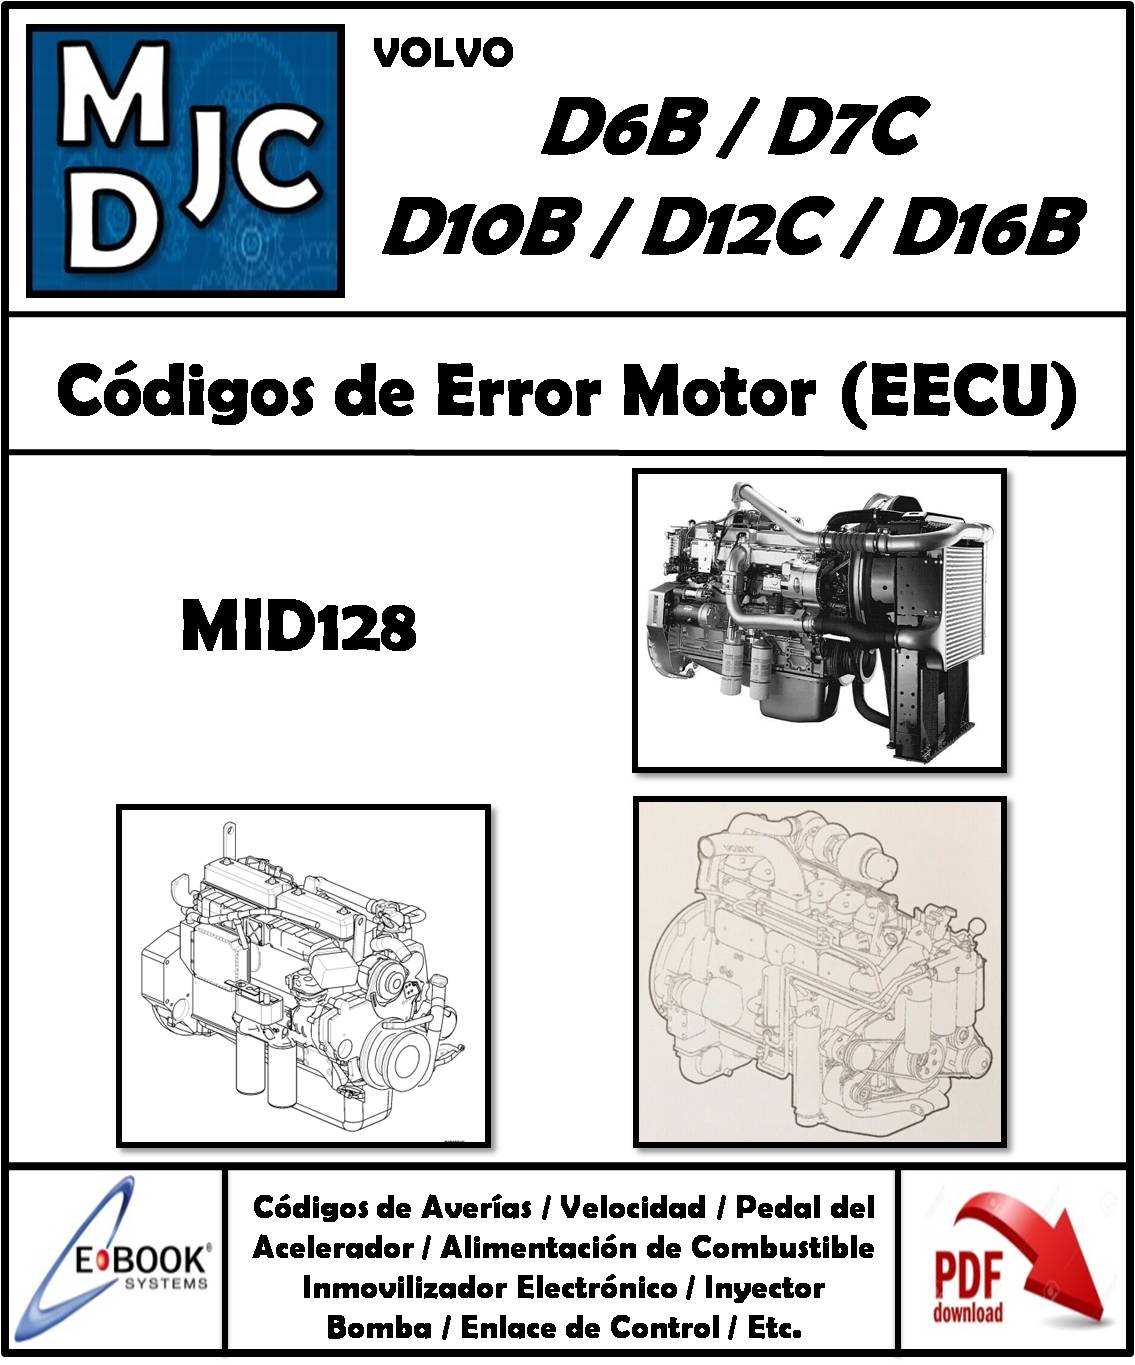 Volvo D6B / D7C / D10B / D12C / D16B